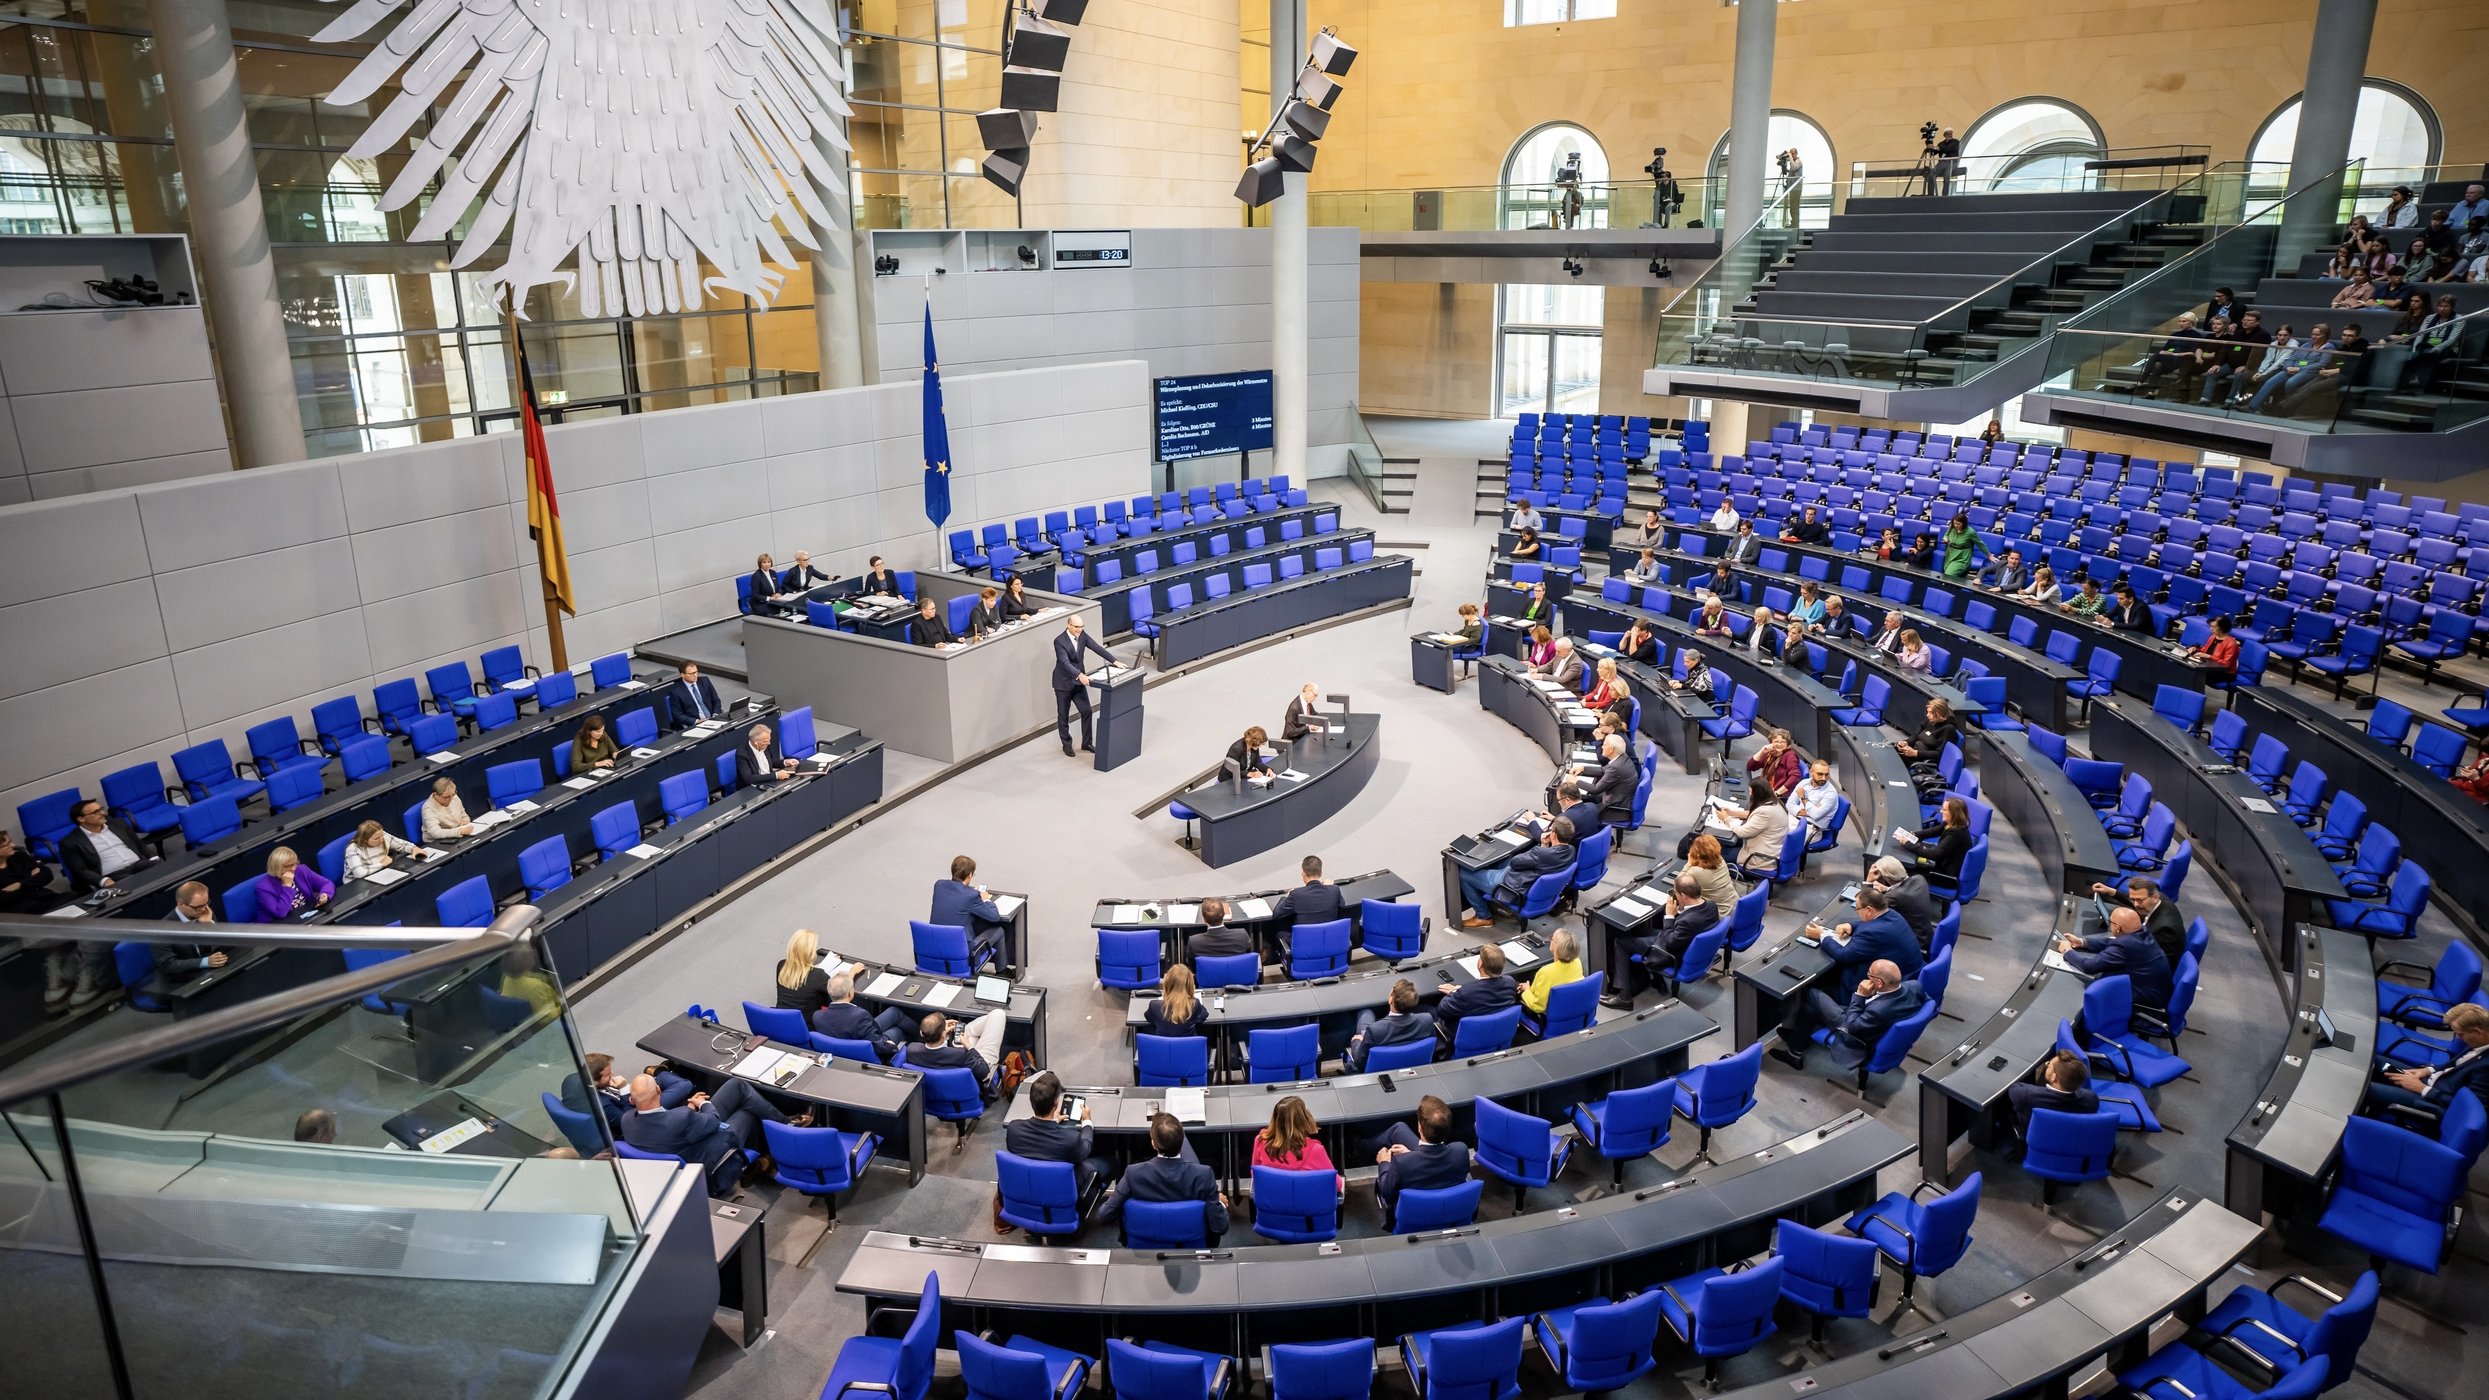 Plenarsaal des Deutschen Bundestags